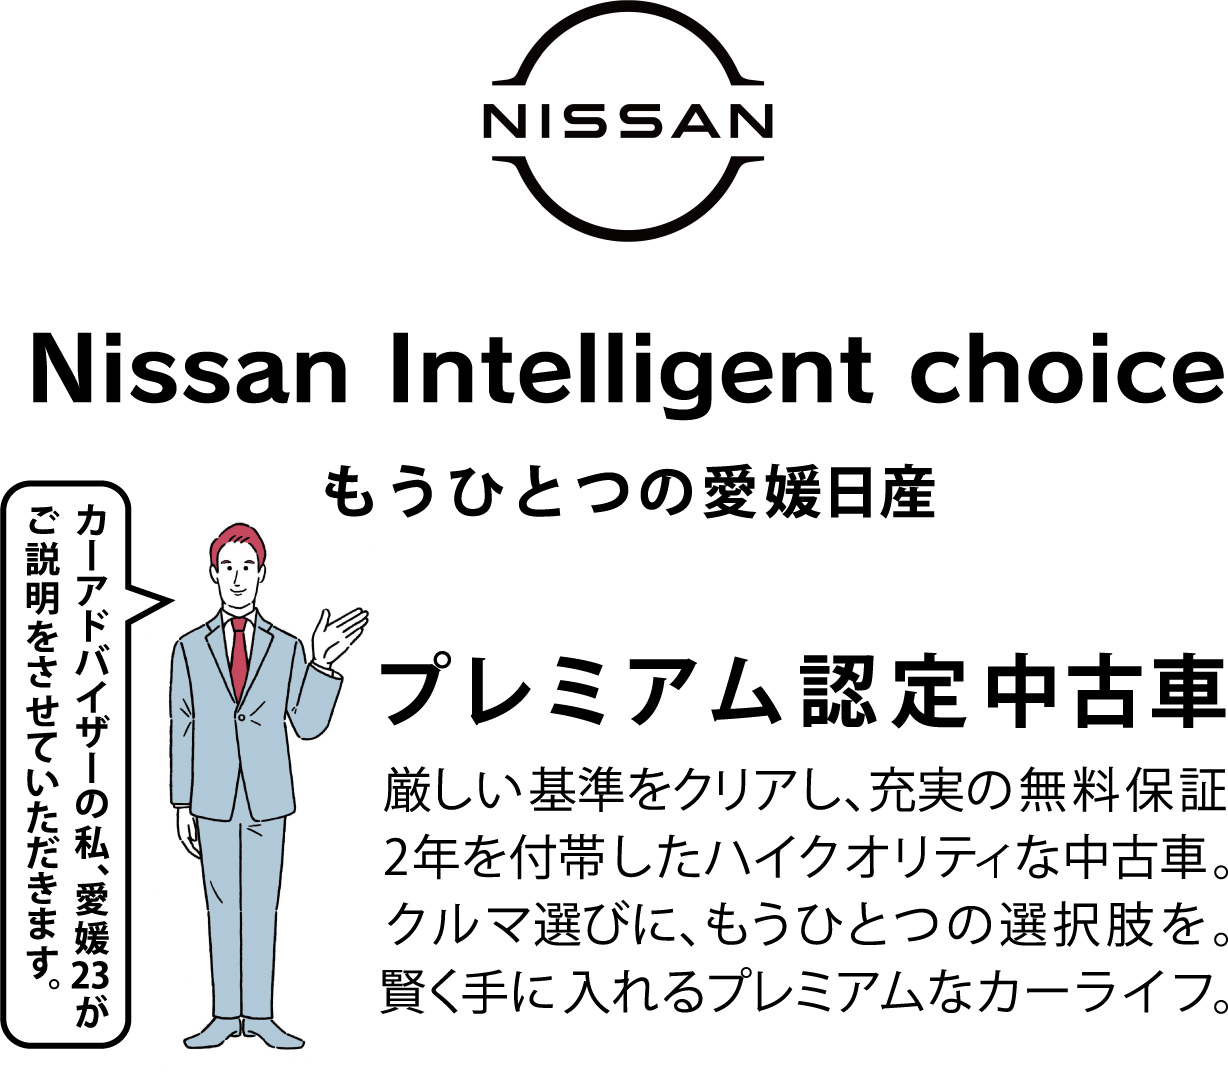 愛媛日産自動車株式会社 Nissan Intelligent Choice